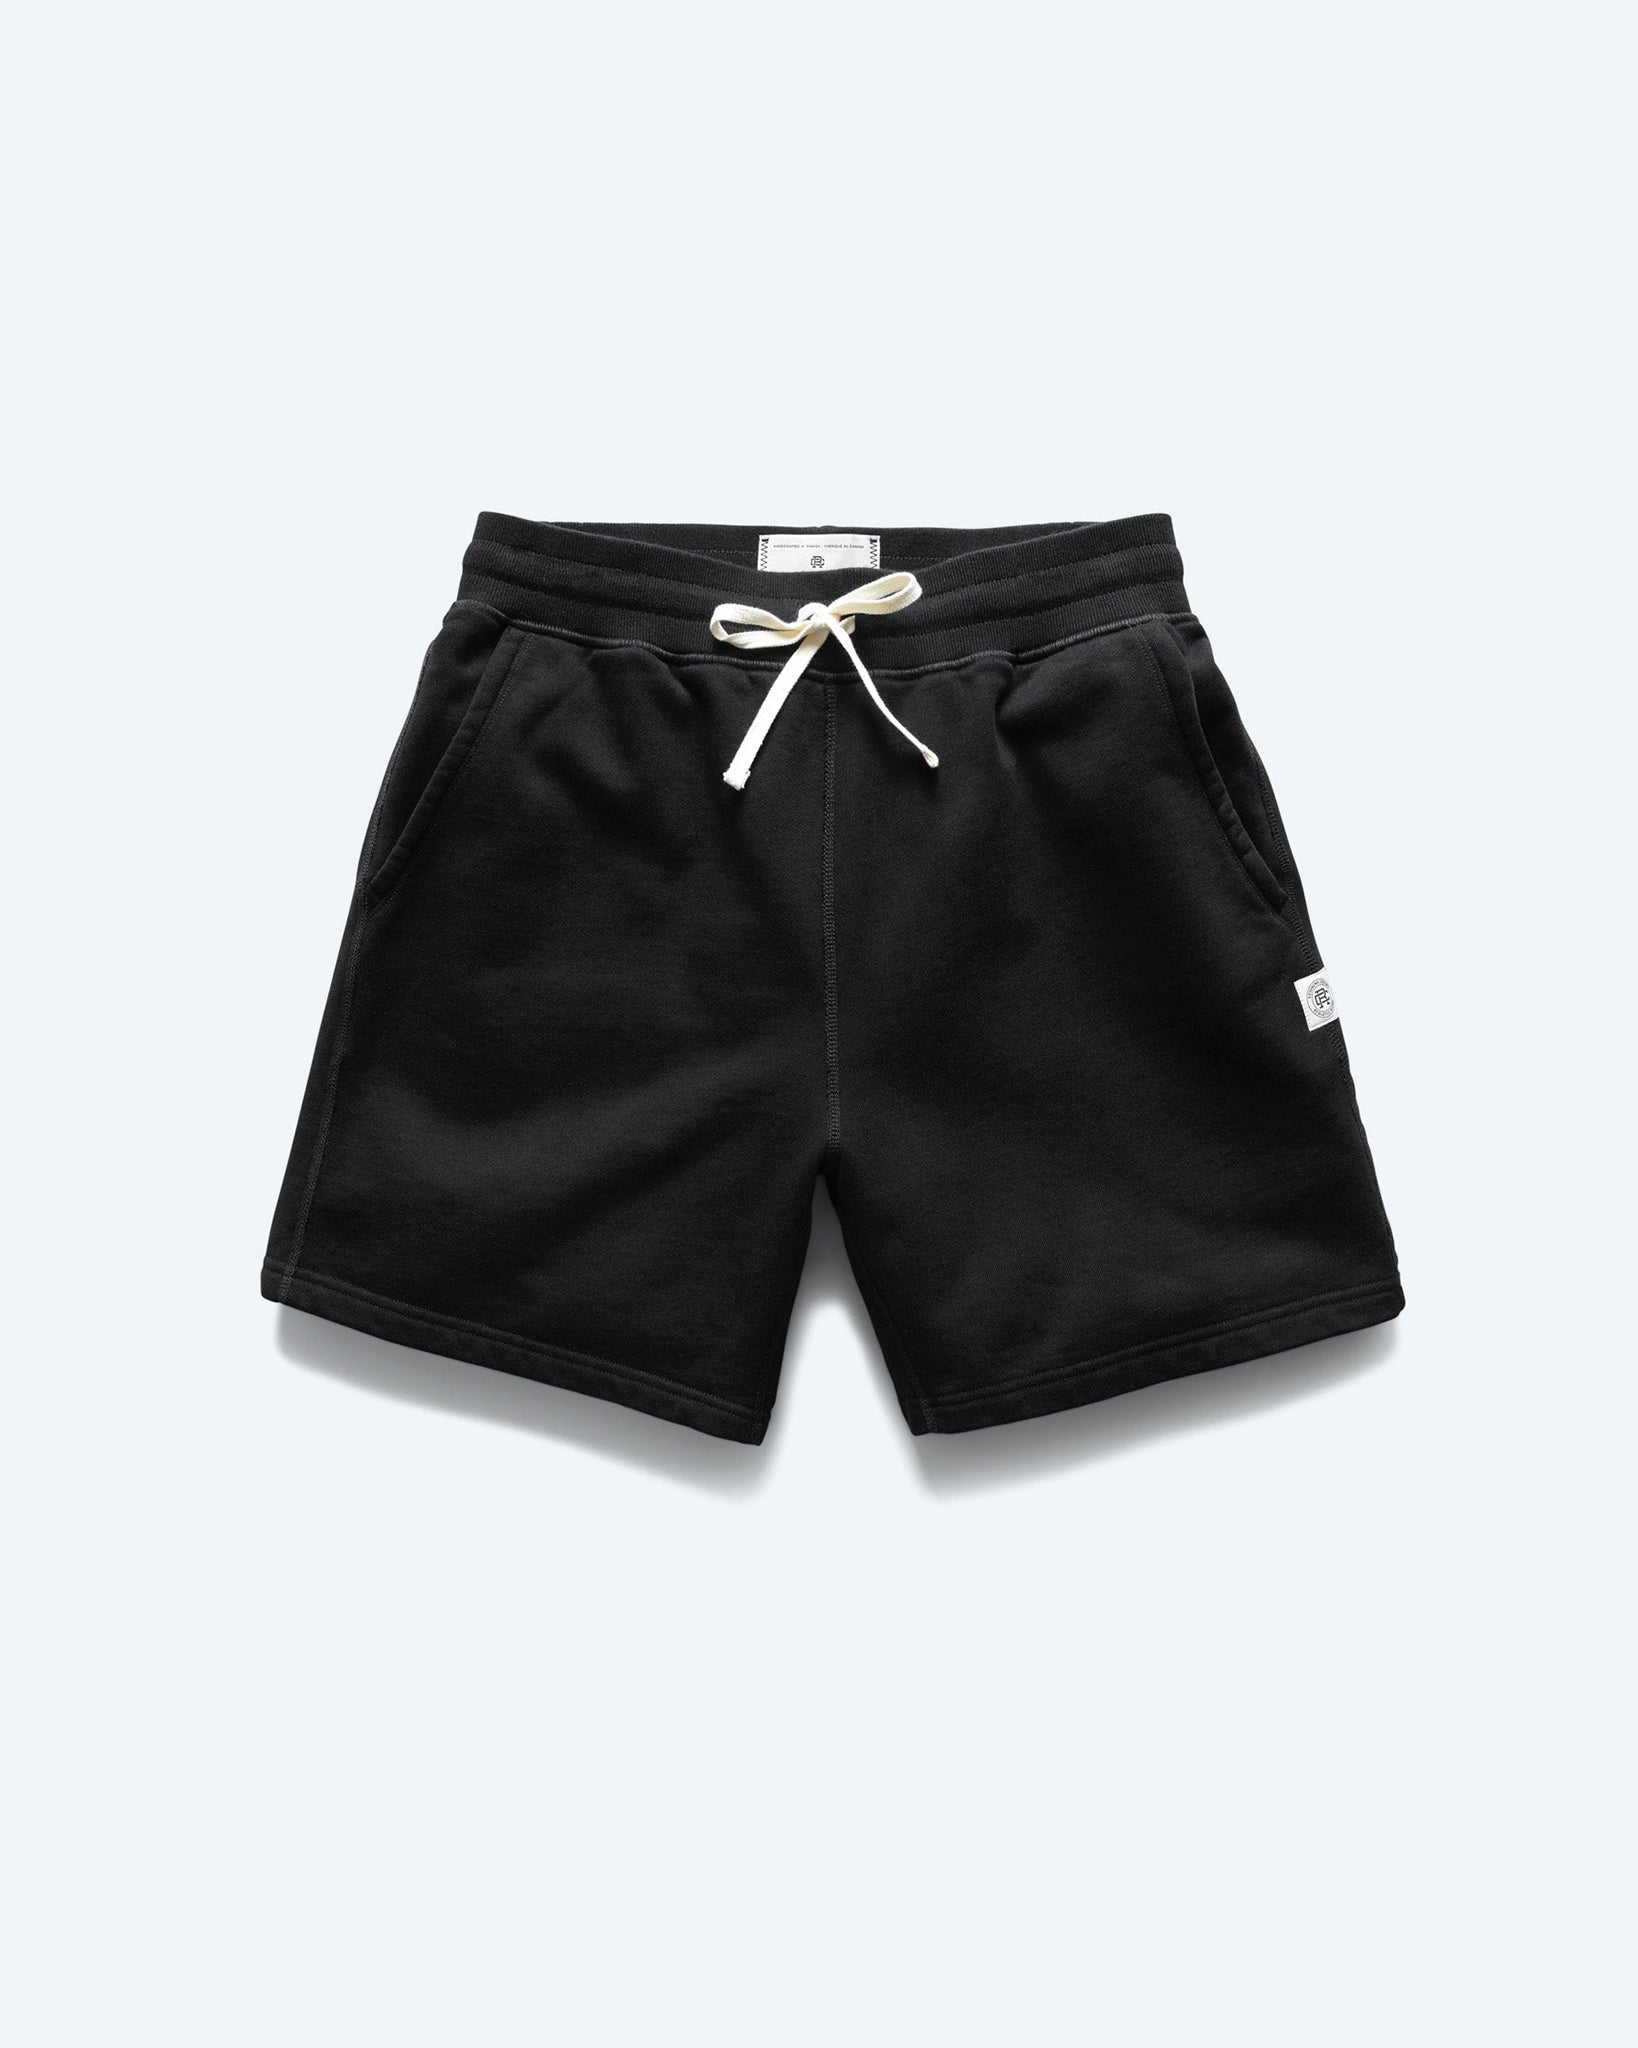 Dynamic Fleece Sweat Shorts -- 7-inch inseam